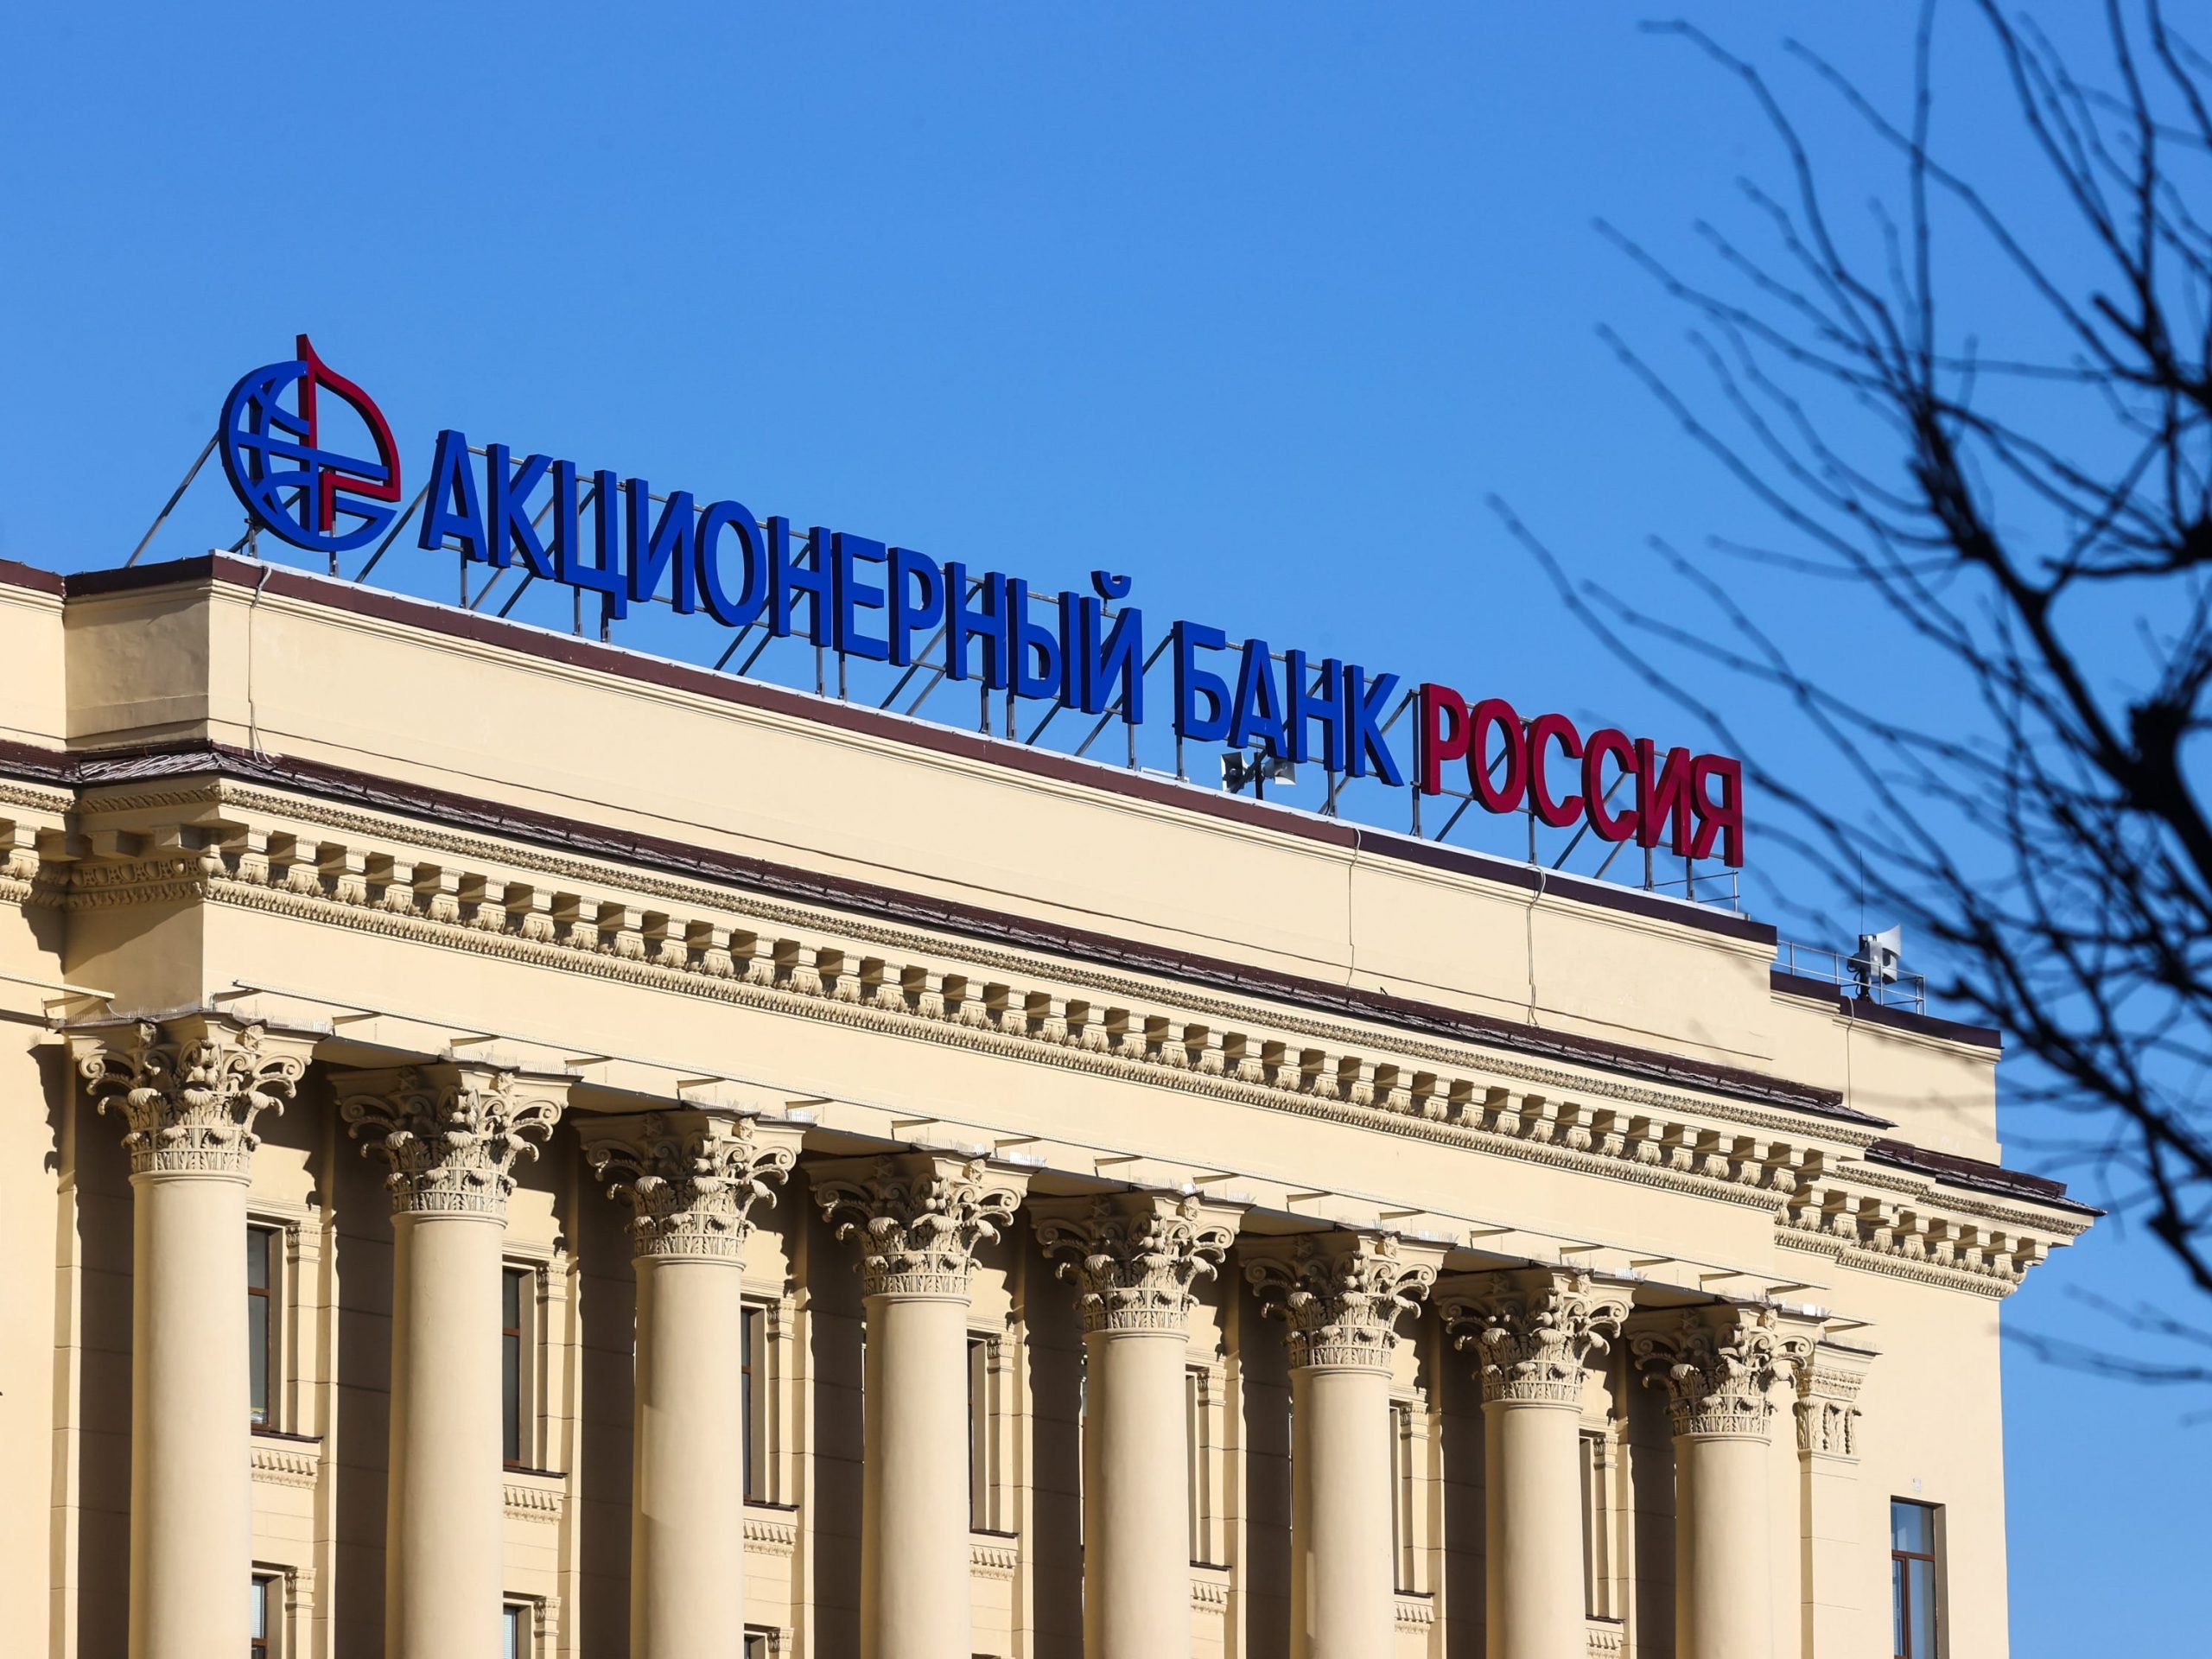 Rossiya Bank headquarters in St Petersburg, Russia.